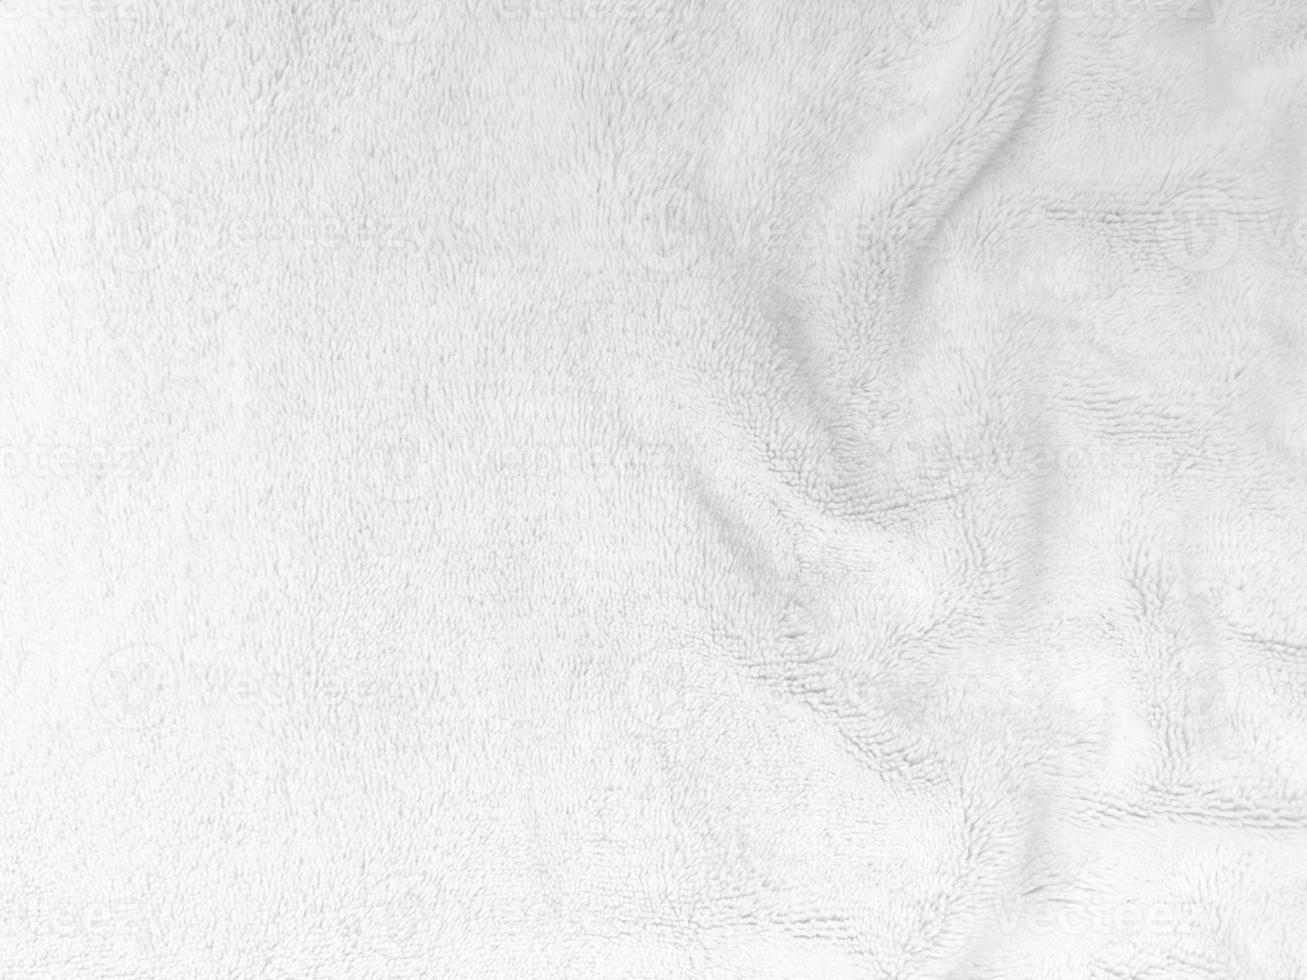 fond de texture de laine propre blanche. laine de mouton naturelle légère. coton blanc sans couture. texture de fourrure moelleuse pour les concepteurs. gros plan fragment de tapis de laine blanche. photo